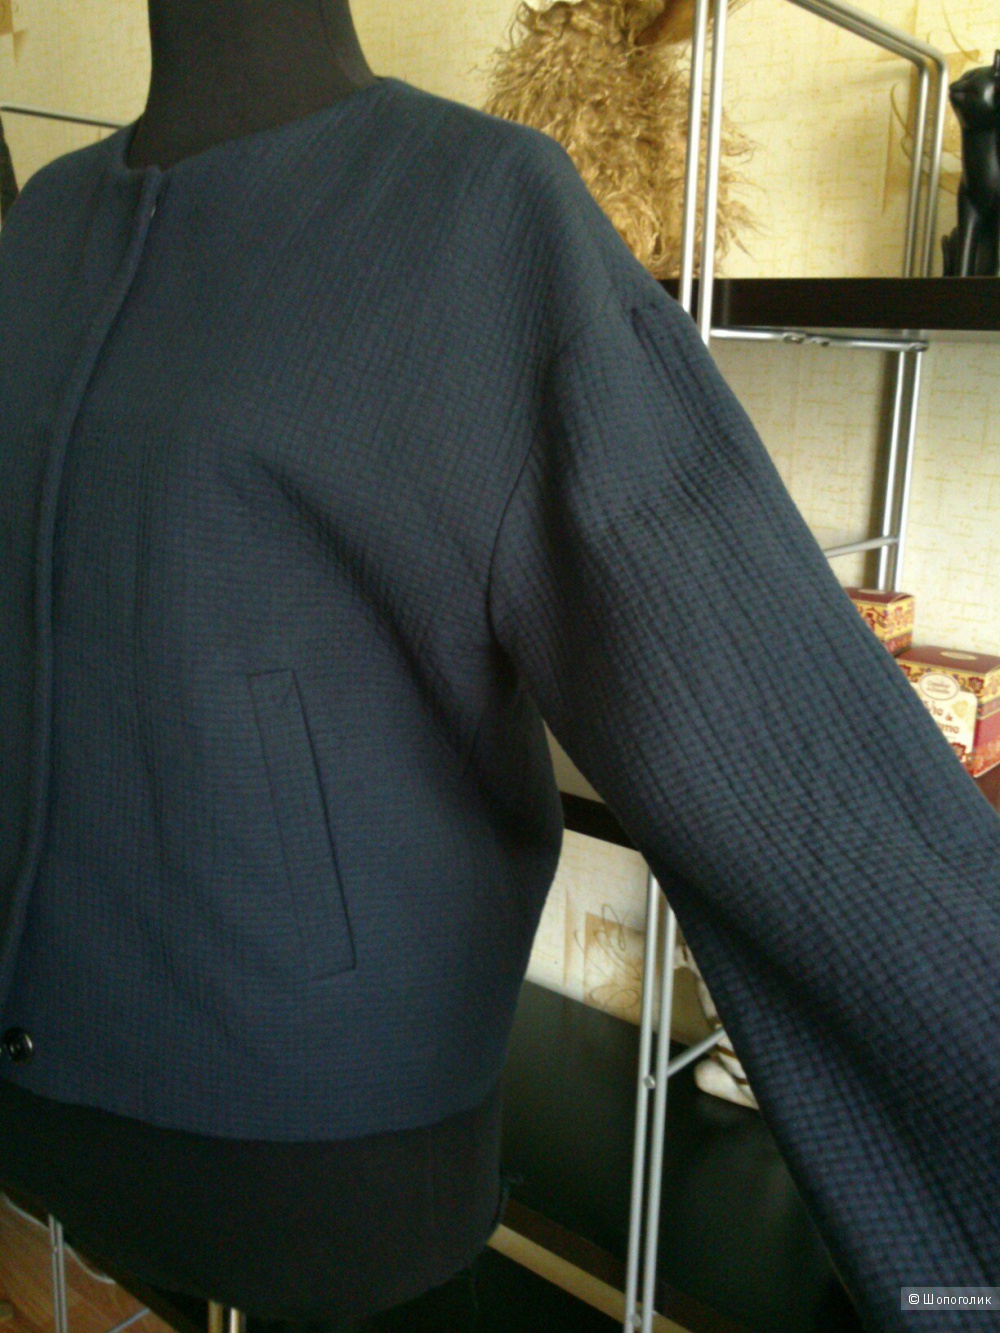 SISSY-BOY, легкая куртка (жакет). Размер: S (на 44 размер).